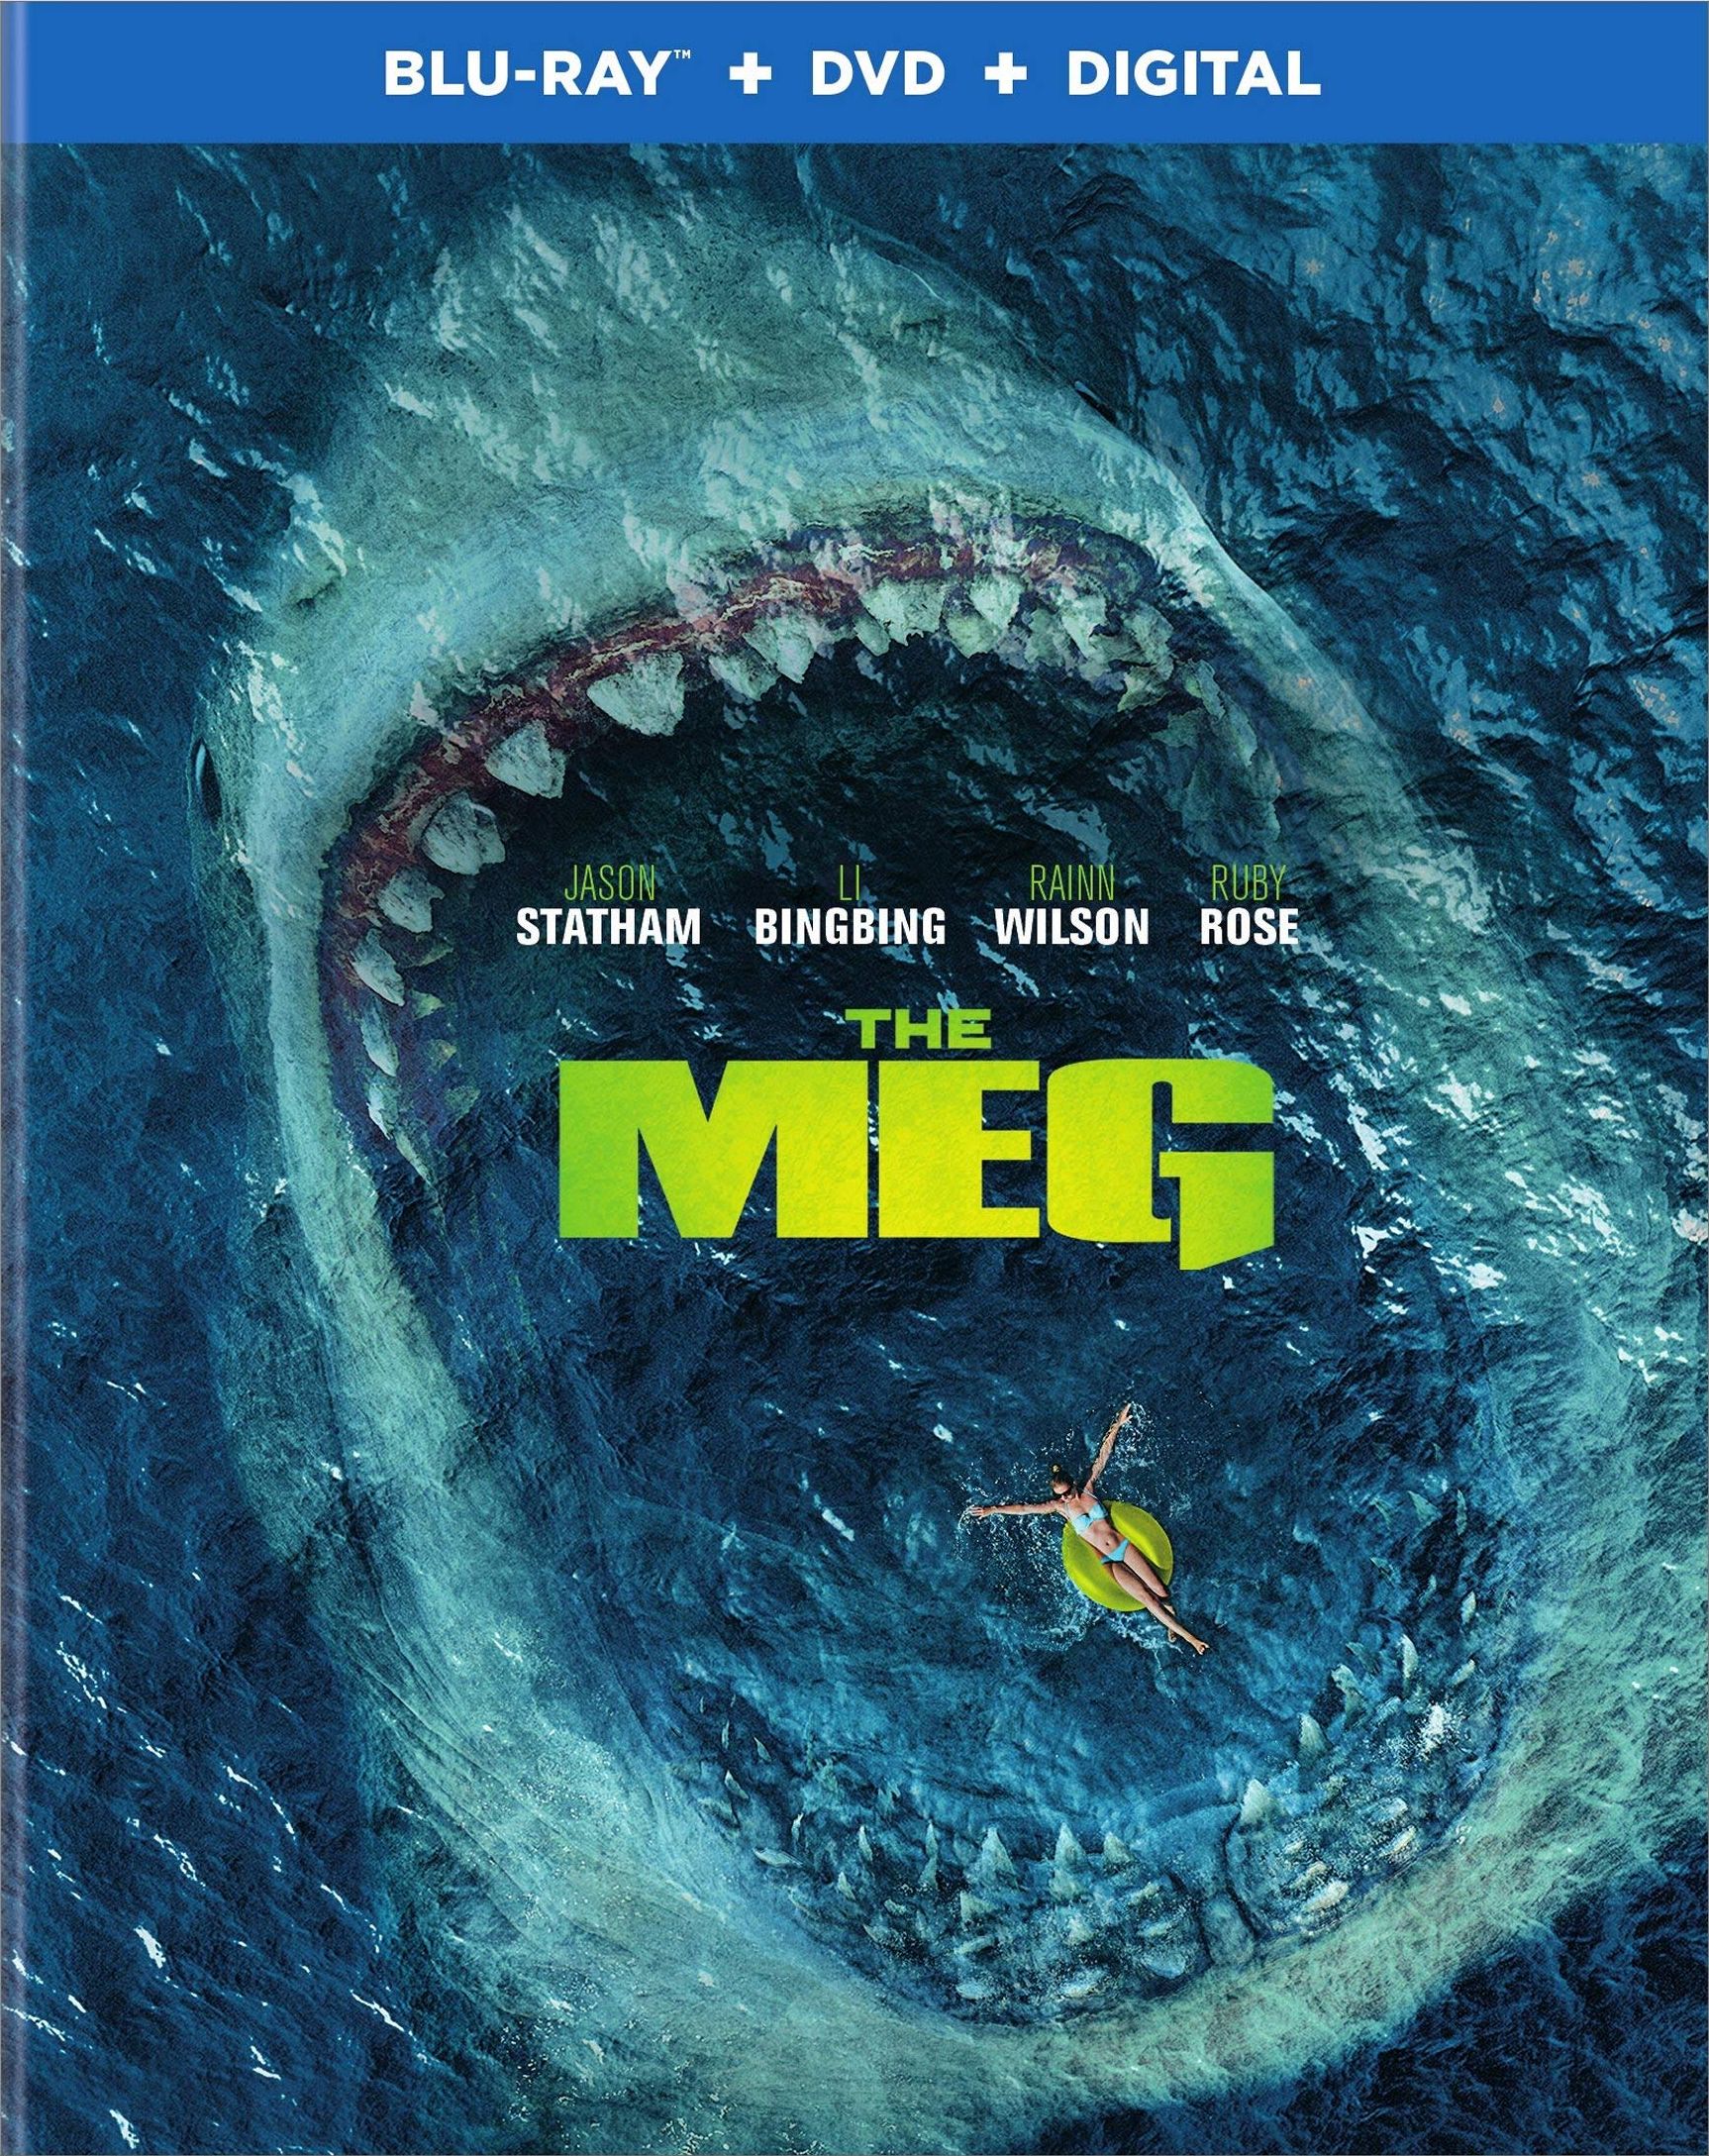 The Meg DVD Release Date November 13, 2018